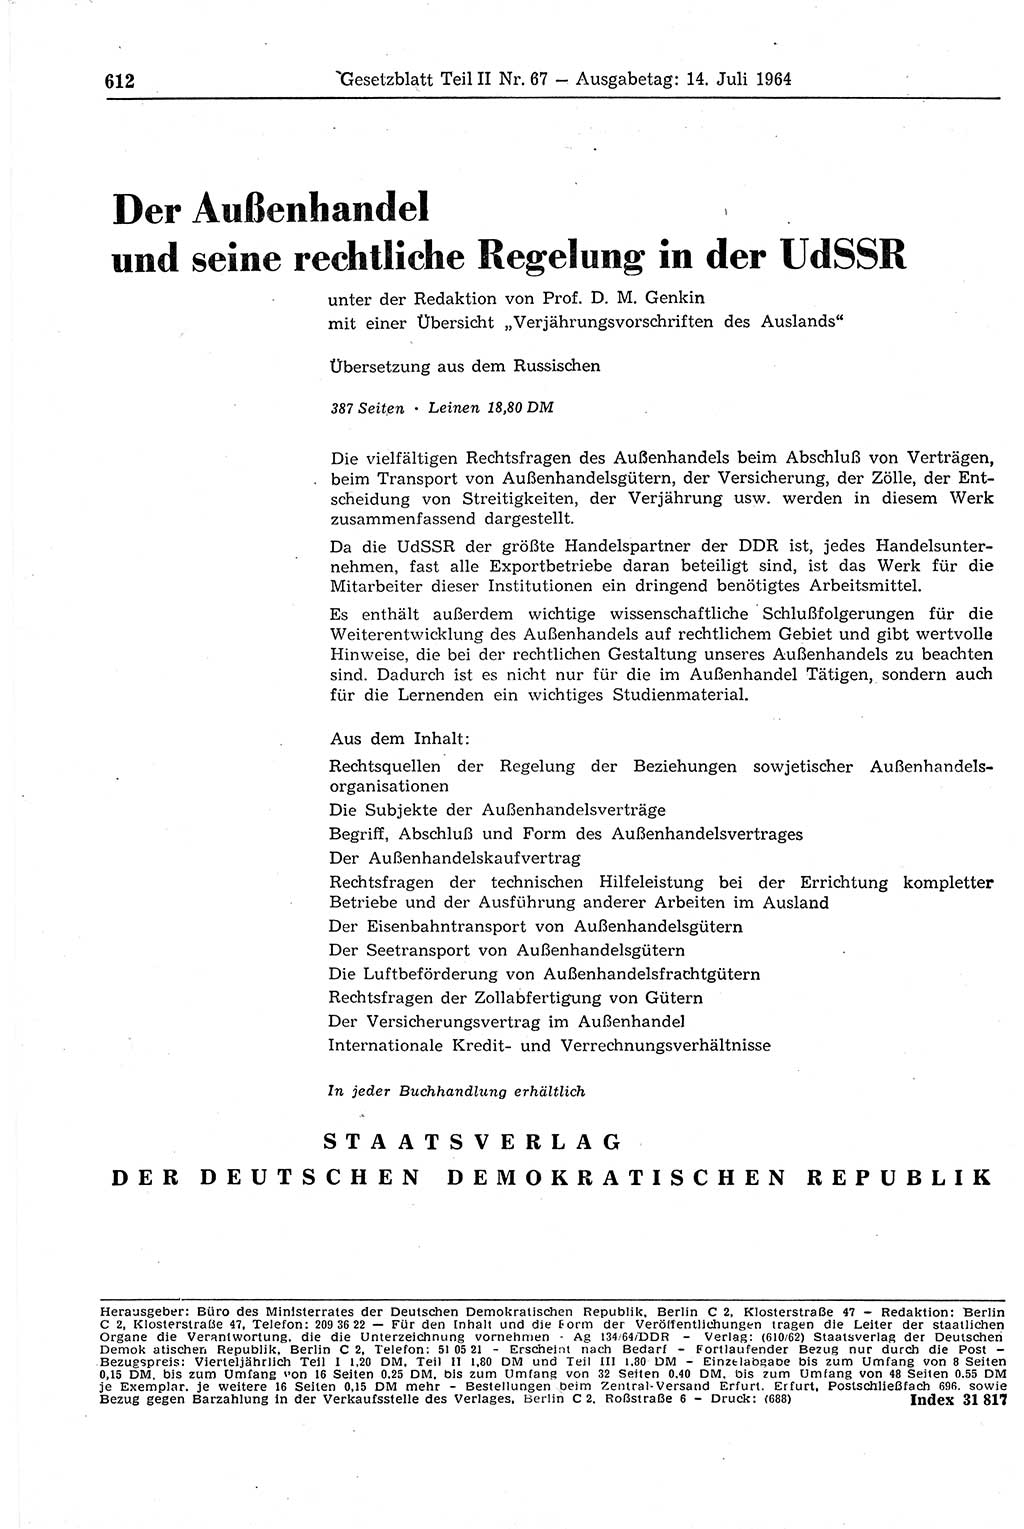 Gesetzblatt (GBl.) der Deutschen Demokratischen Republik (DDR) Teil ⅠⅠ 1964, Seite 612 (GBl. DDR ⅠⅠ 1964, S. 612)